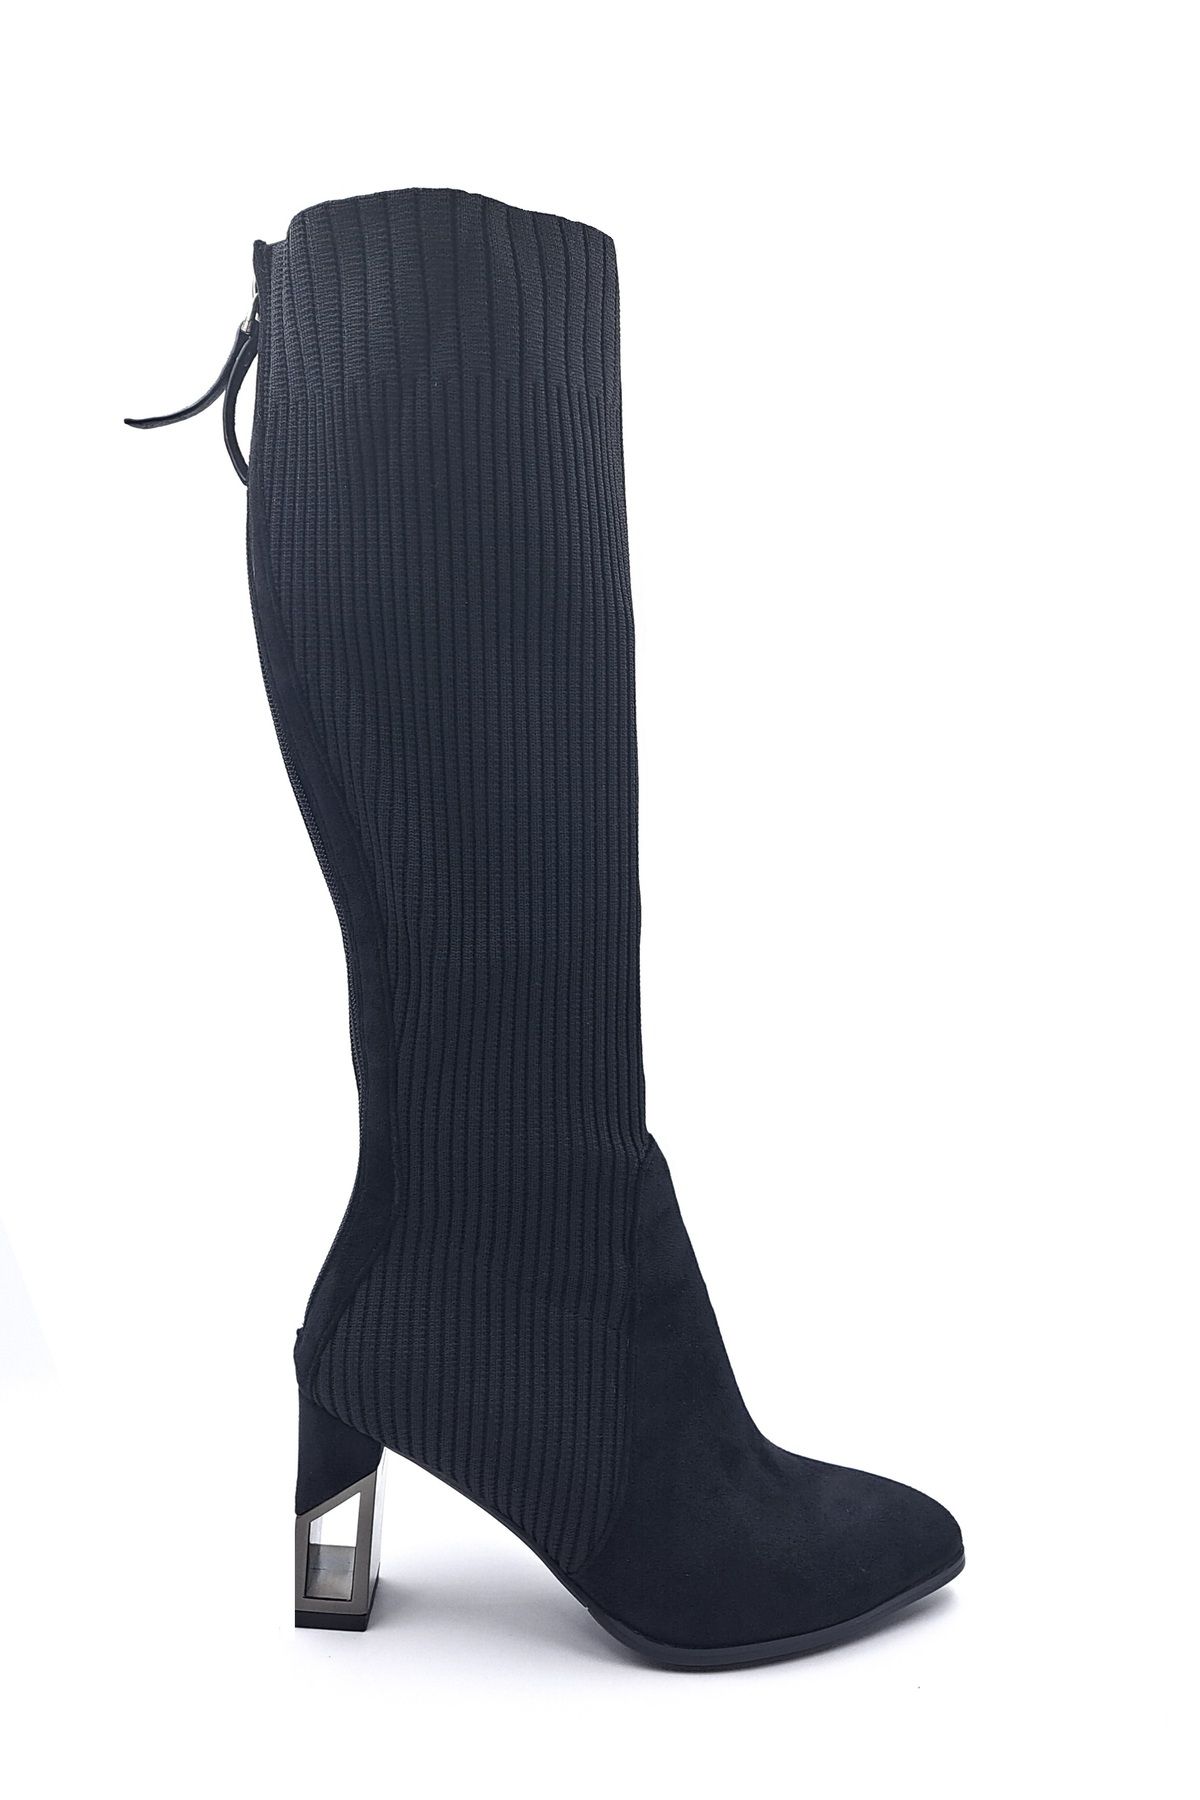 Guja Arkadan Fermuarlı Topuklu Kadın Triko ve Süet Siyah Çorap Çizme